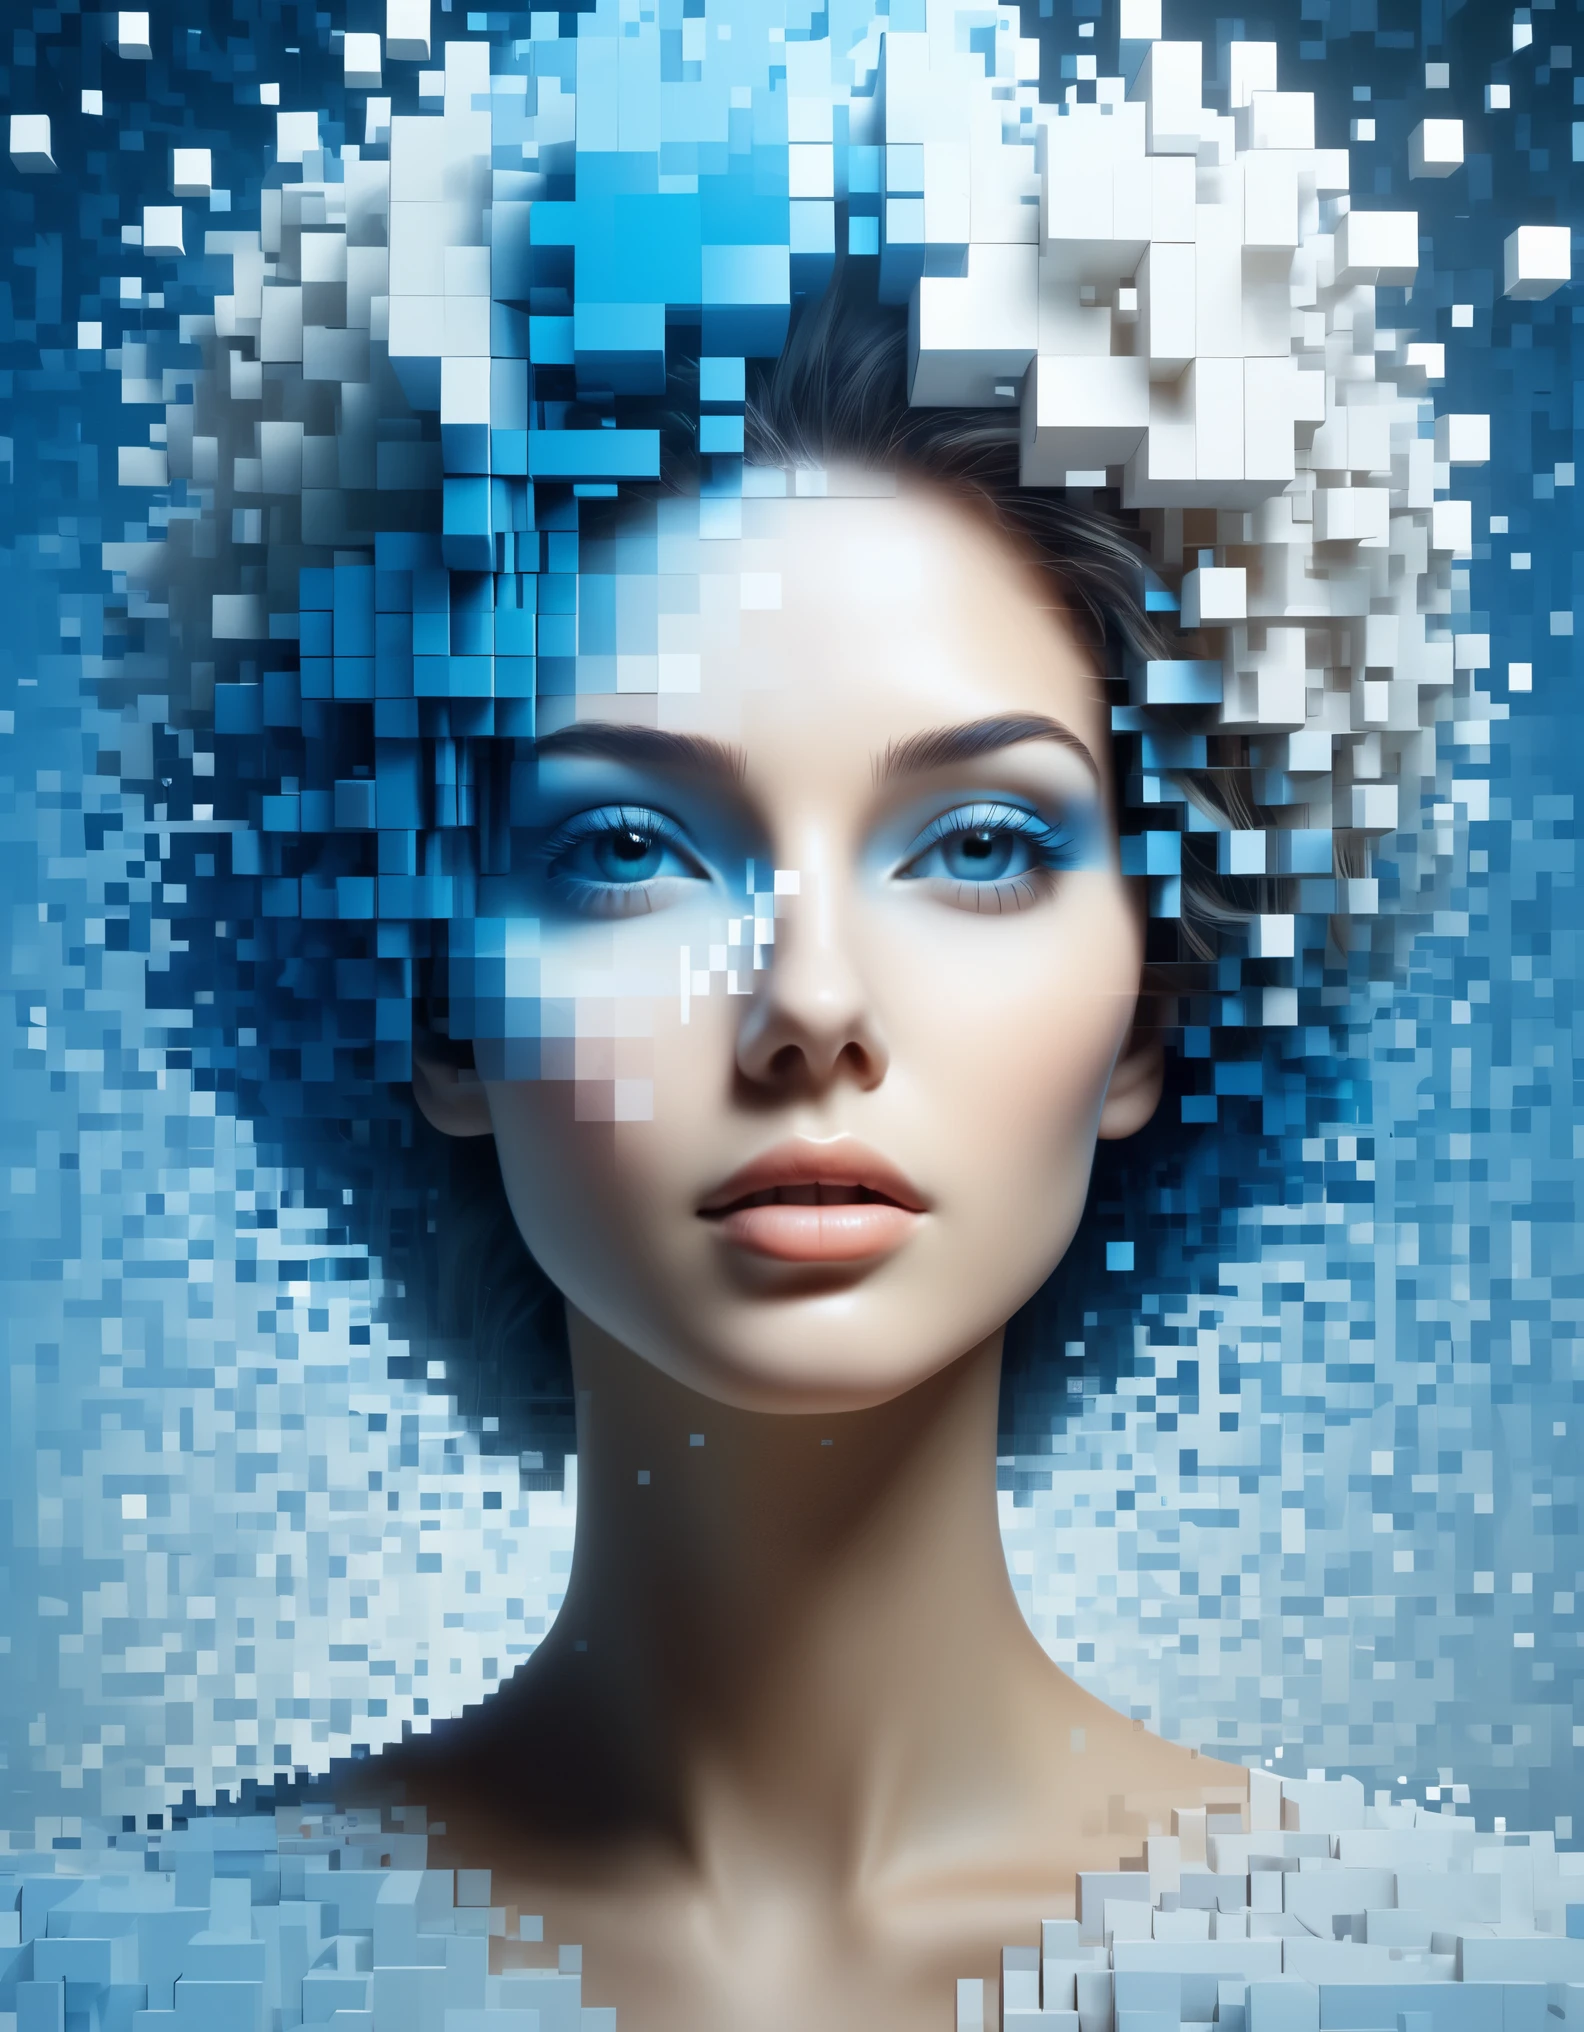 아름다운 여성의 파란색 그라데이션 색상이 용해된 픽셀 벽&#39;머리，3D 복셀 블록，처음에는 손상되지 않았지만 점차 공기 중에서 분해되는 구조，부분적으로 움푹 패인 틈으로 햇빛이 들어온다.，배경 홀로그램 우주 공간